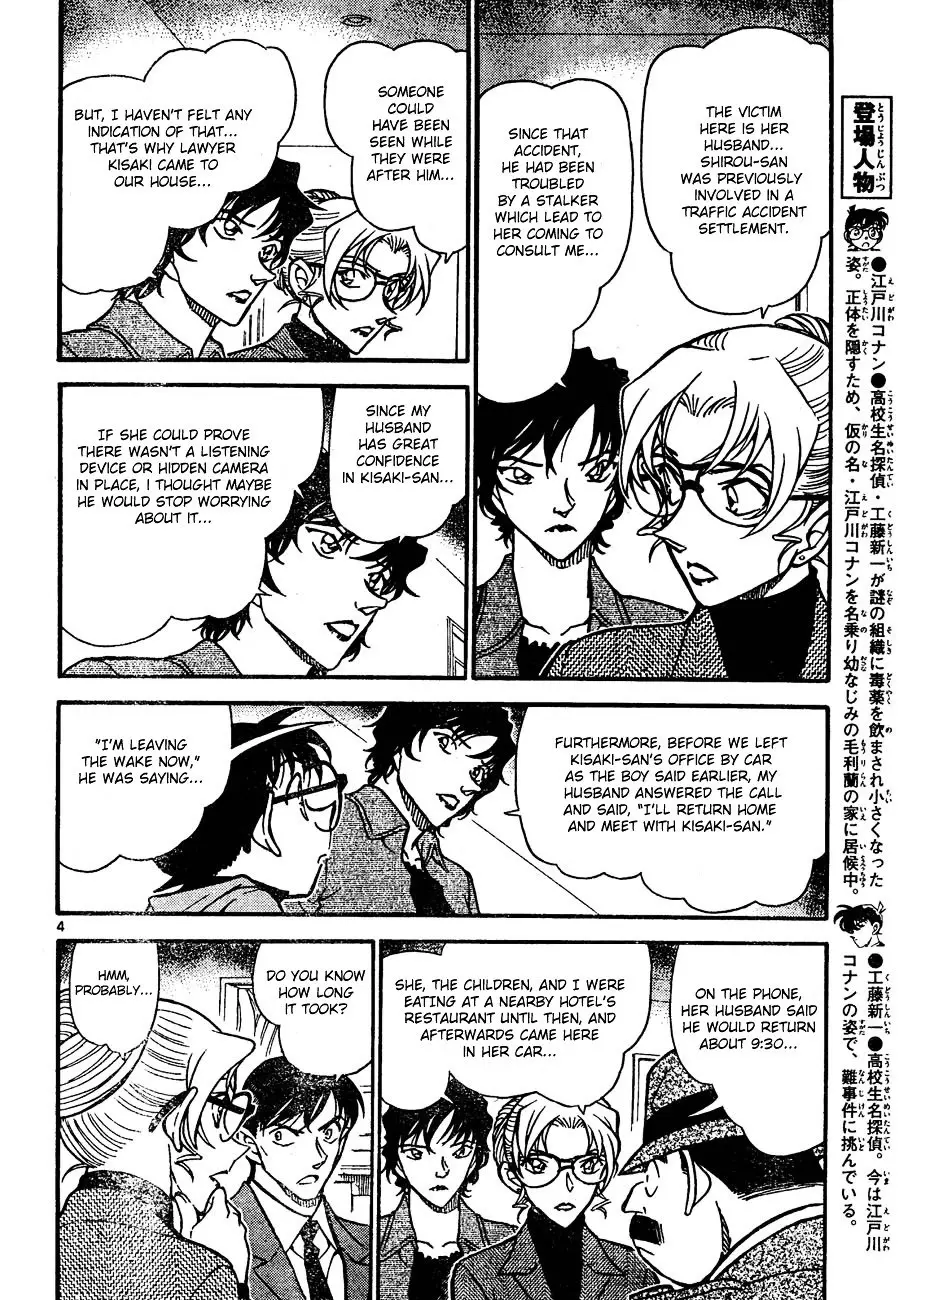 Detective Conan - 644 page 4